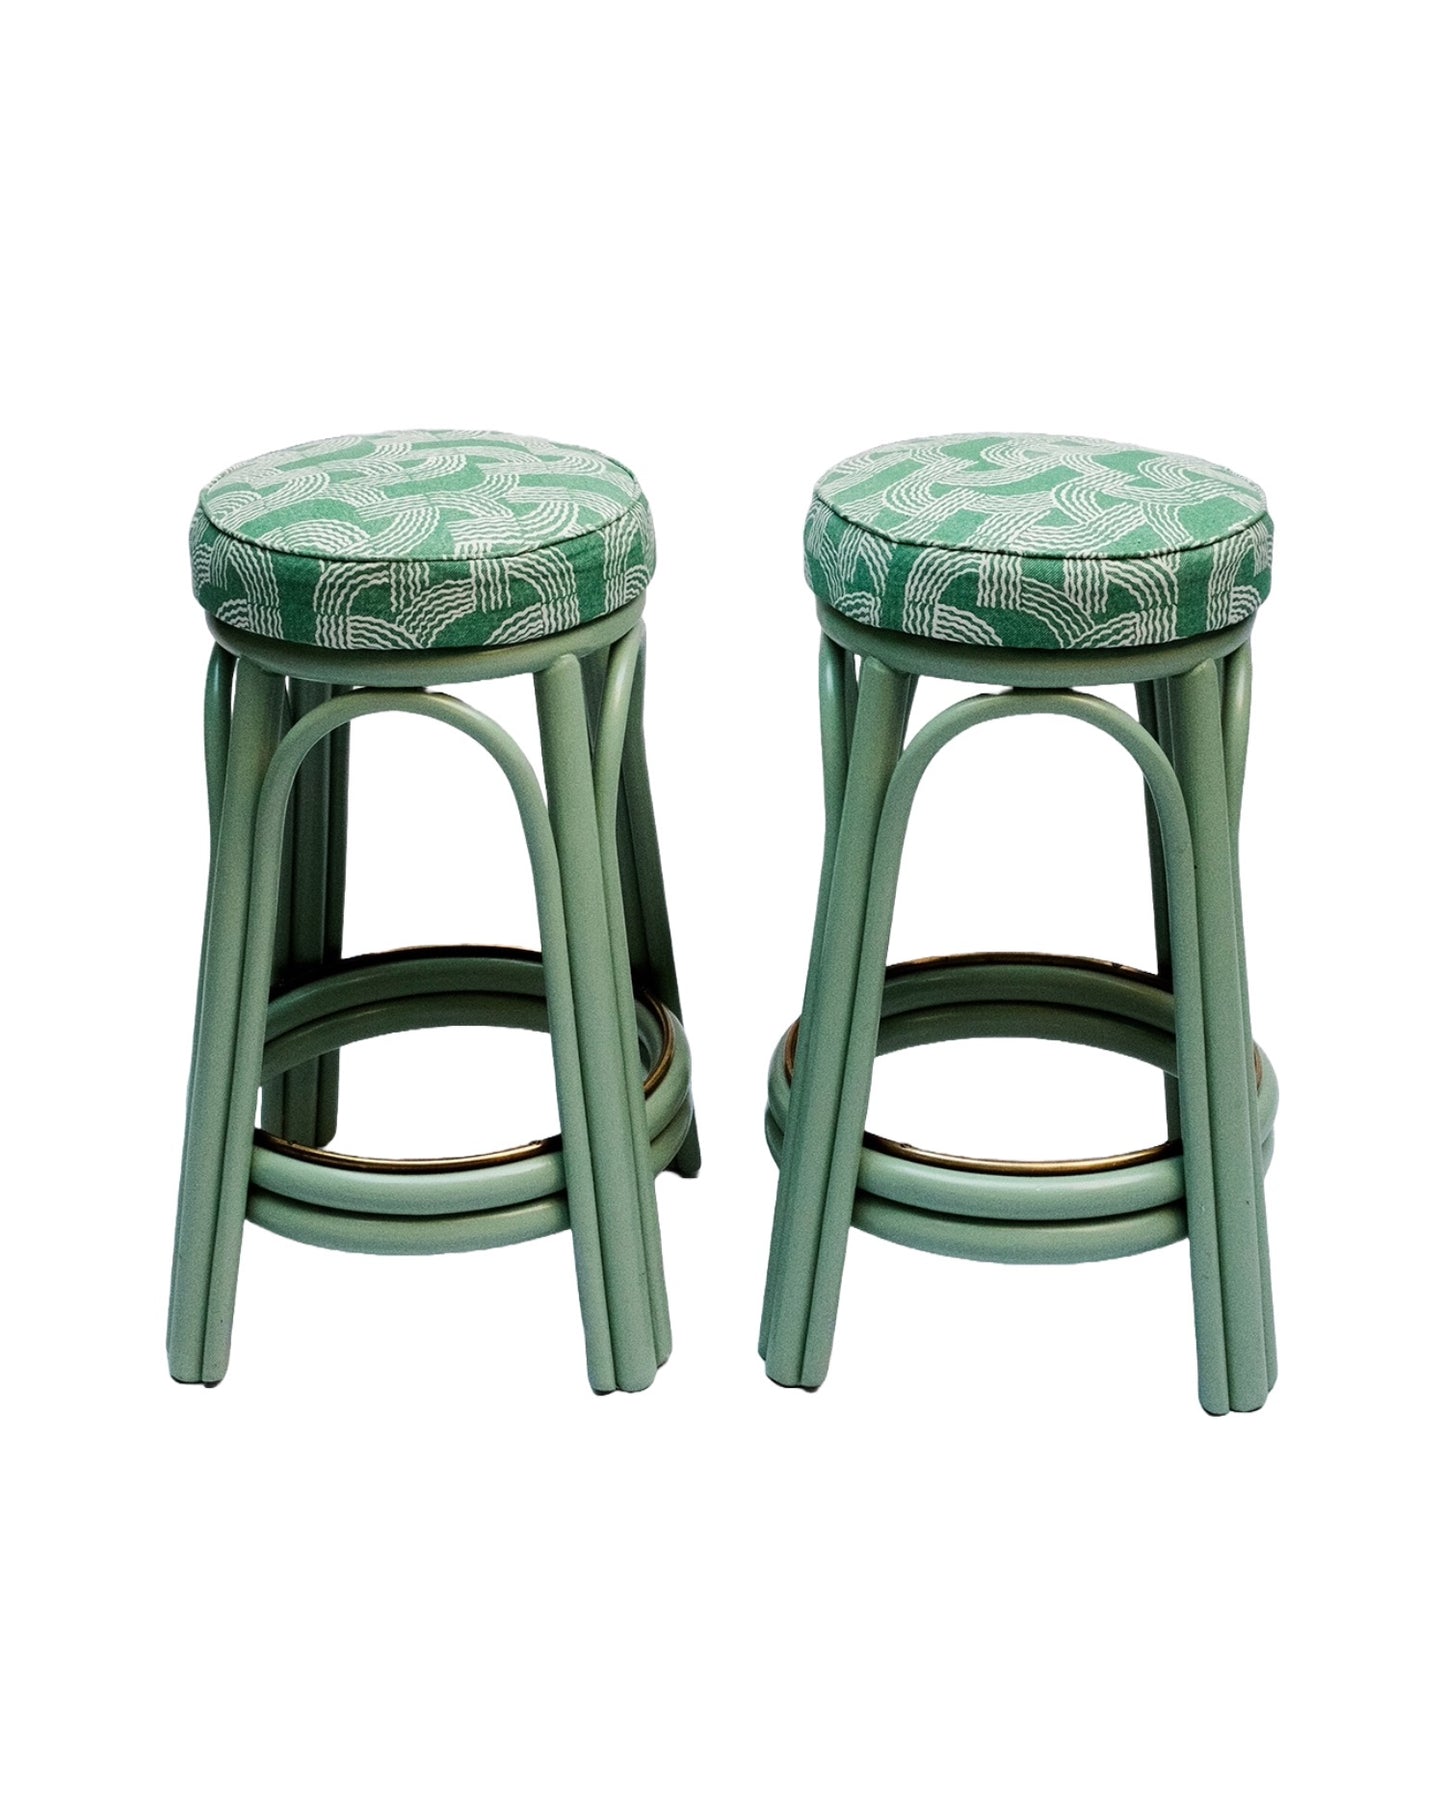 Pair of original "Angraves" cane stools